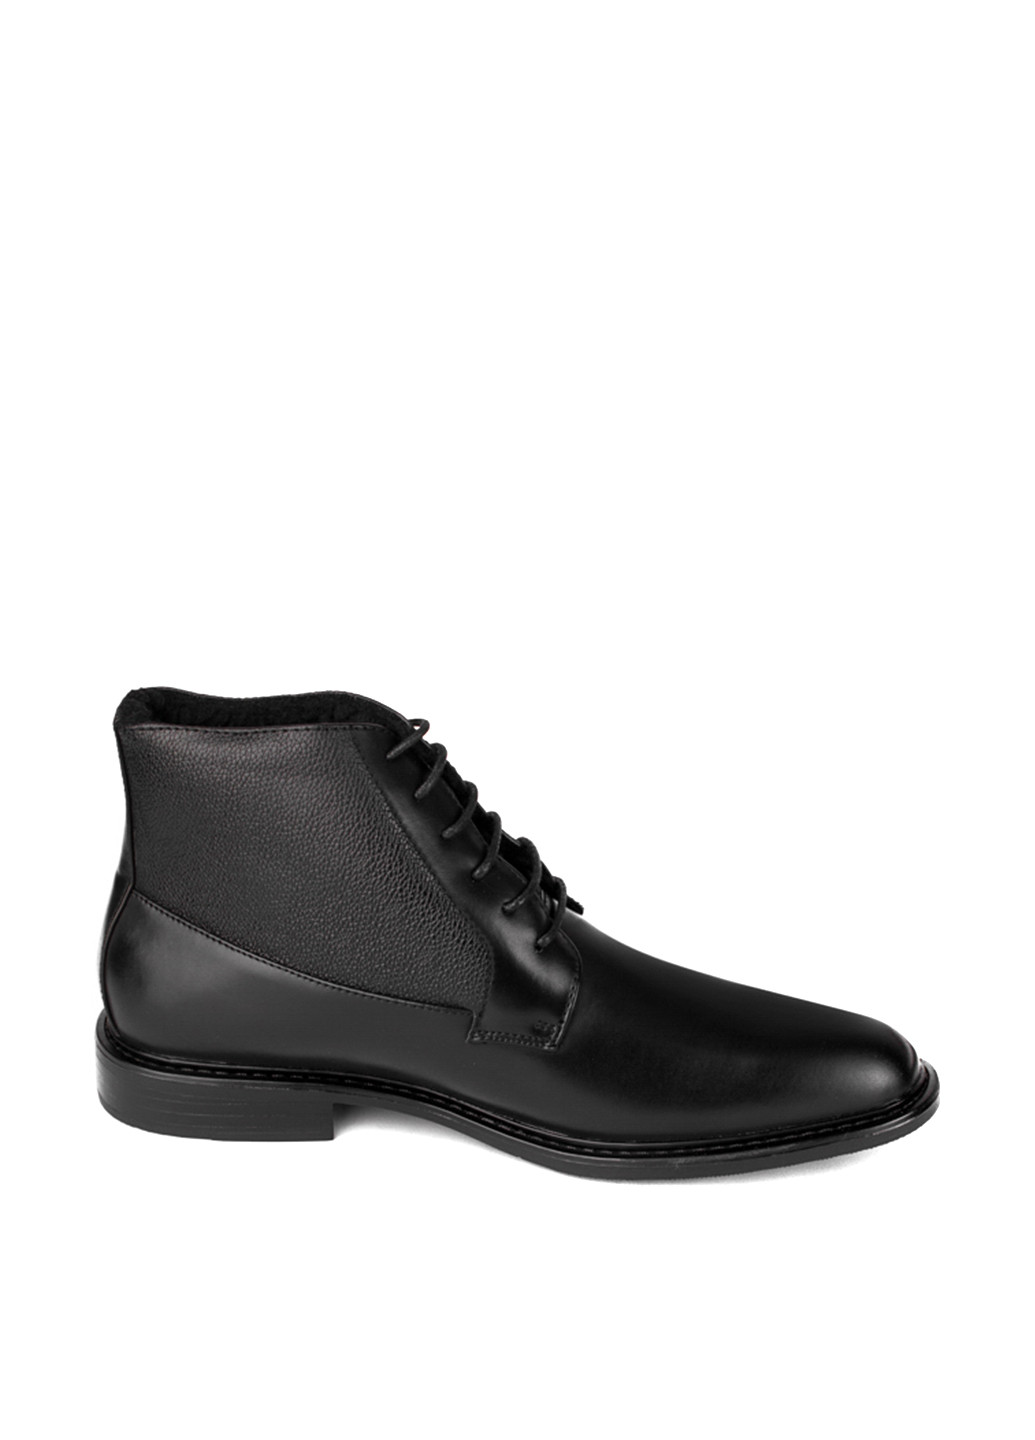 Черные осенние/зимние ботинки Arber